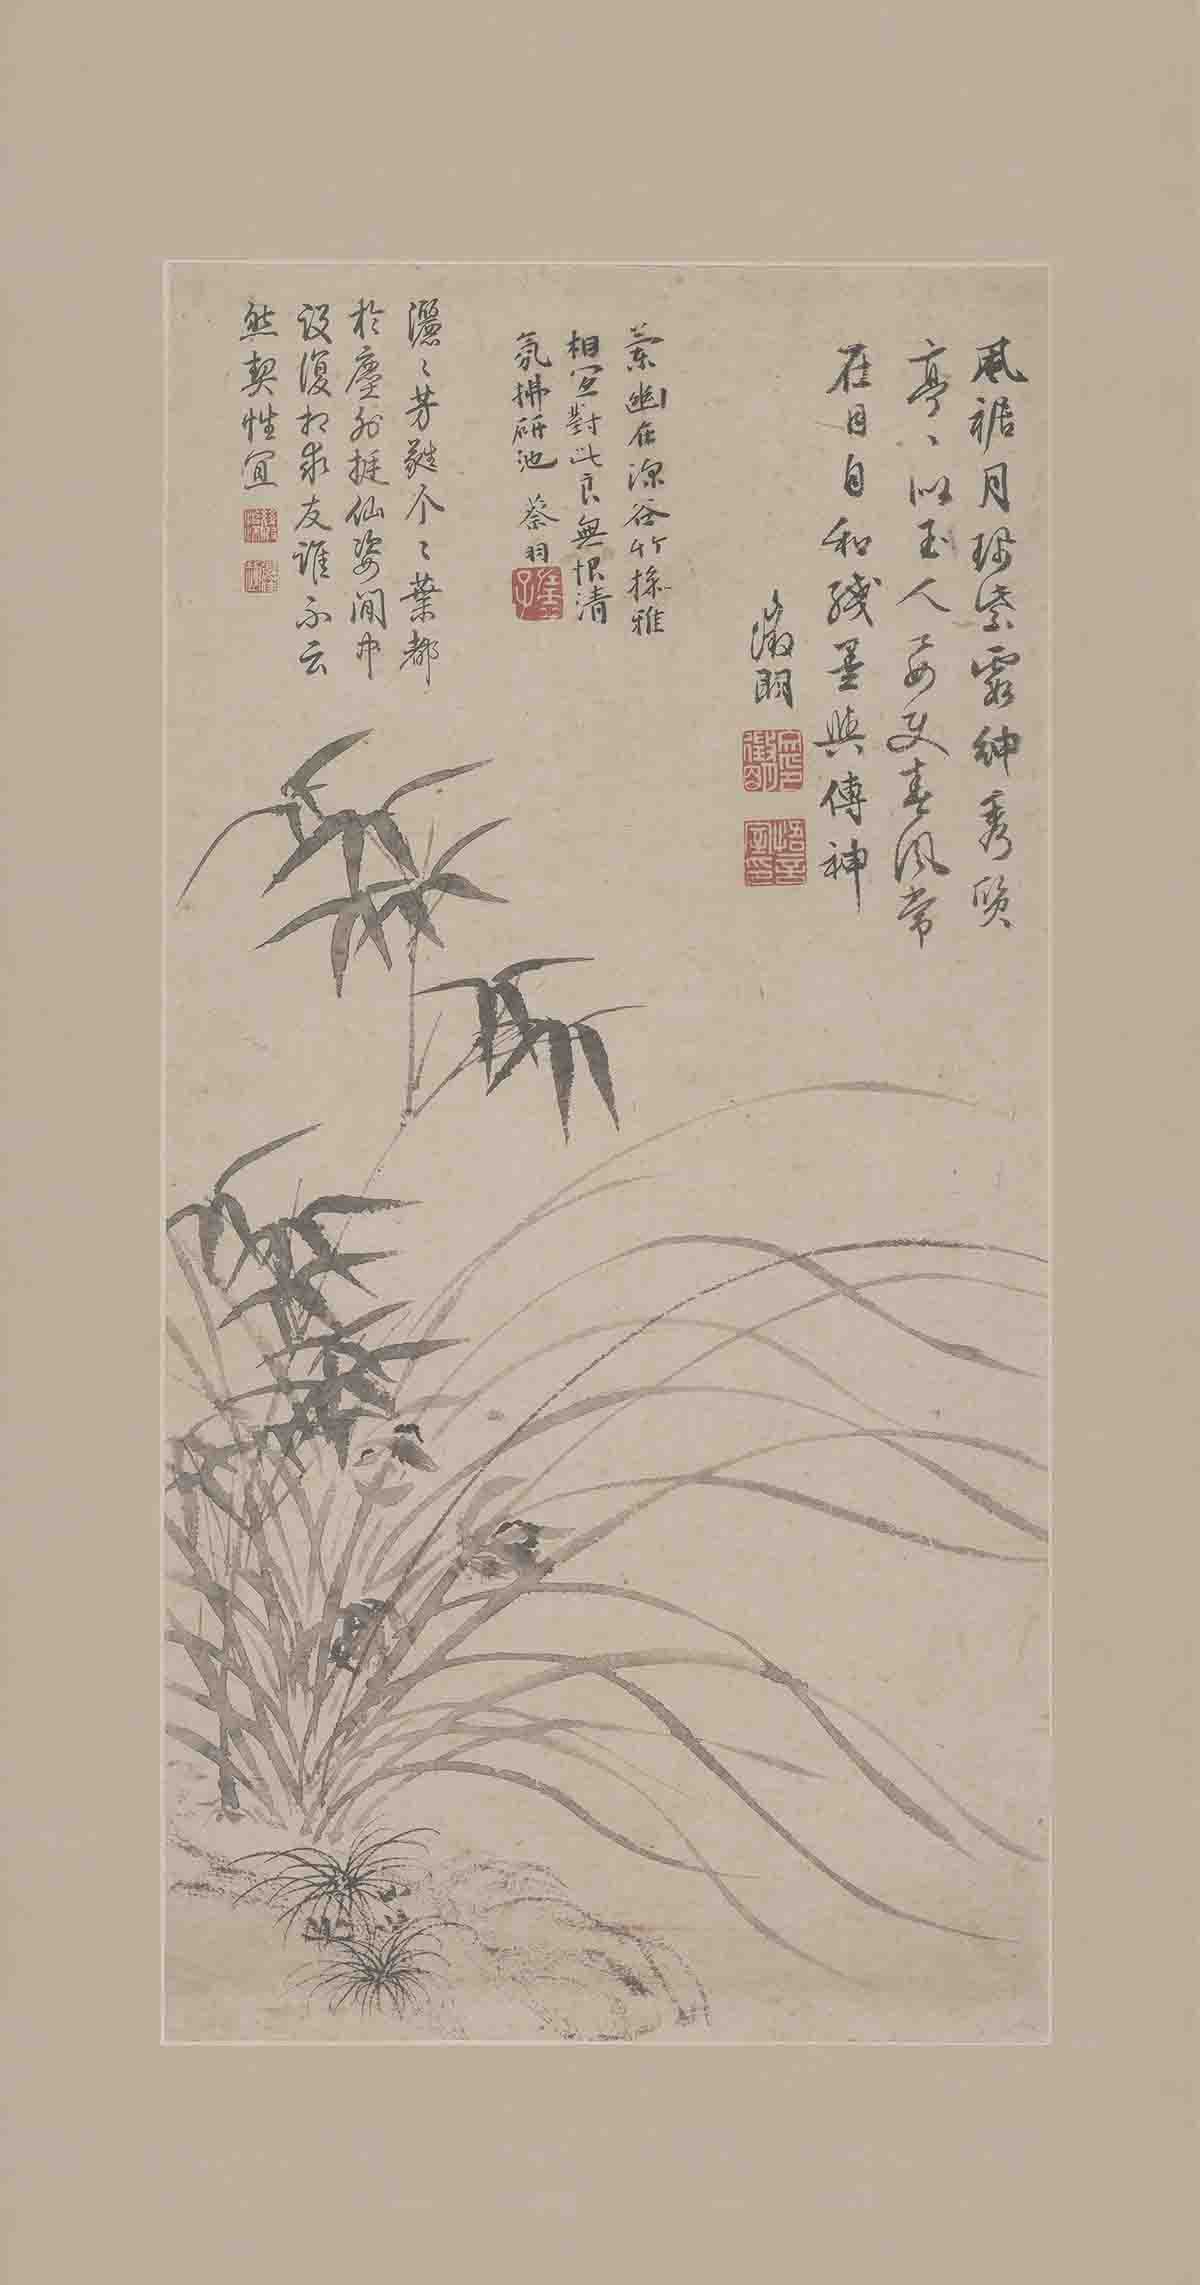 明 文徵明 兰竹图(立轴)纸本26.8x73北京故宫